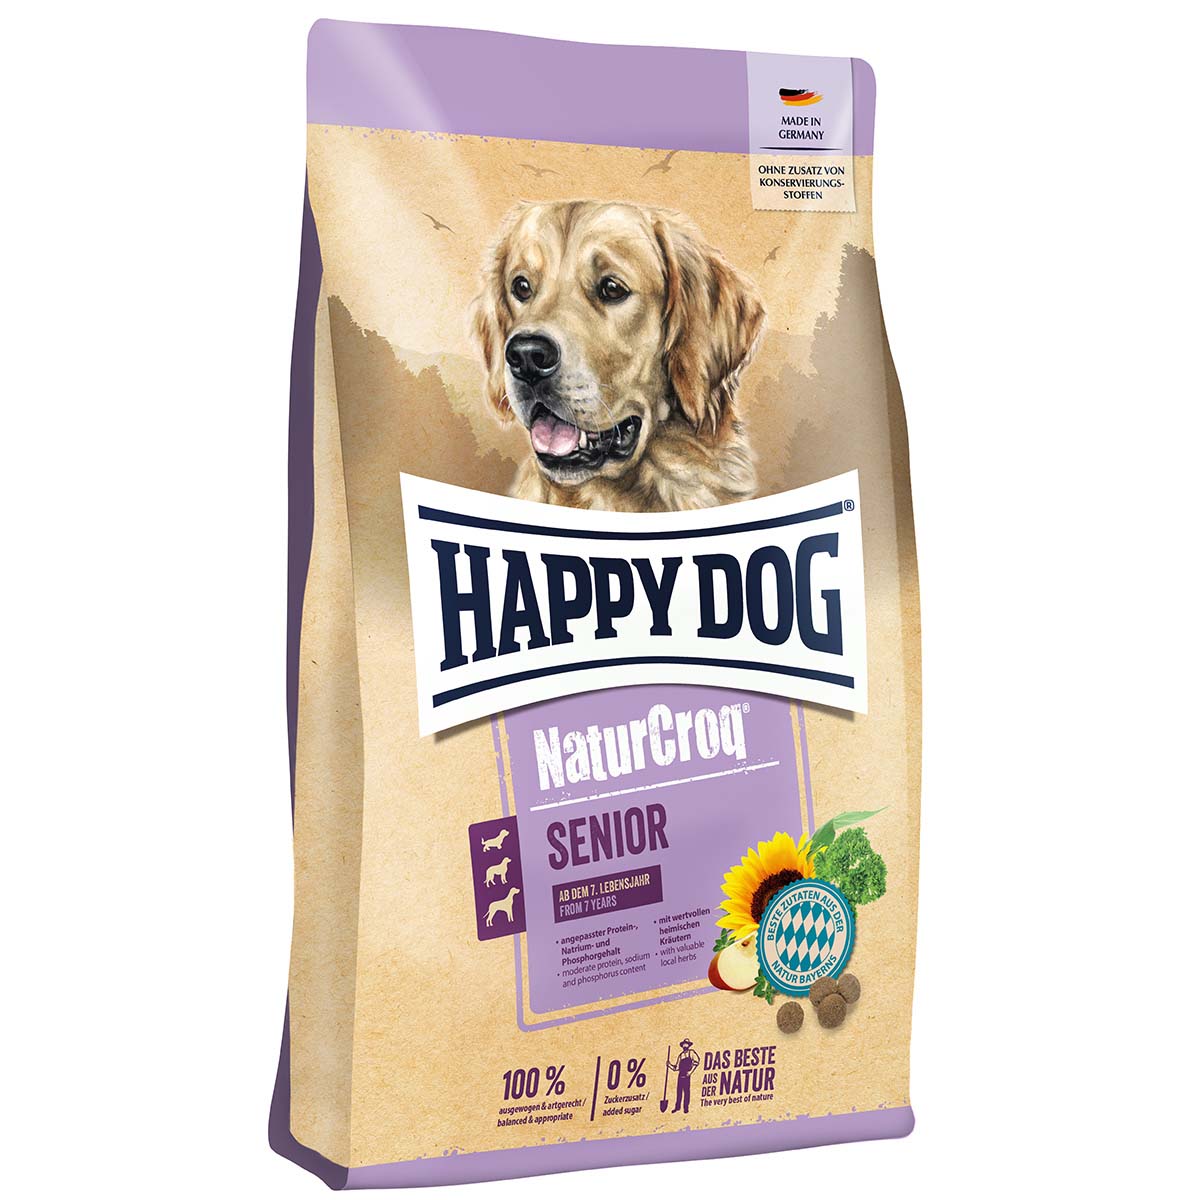 Happy Dog NaturCroq Senior 4kg von Happy Dog